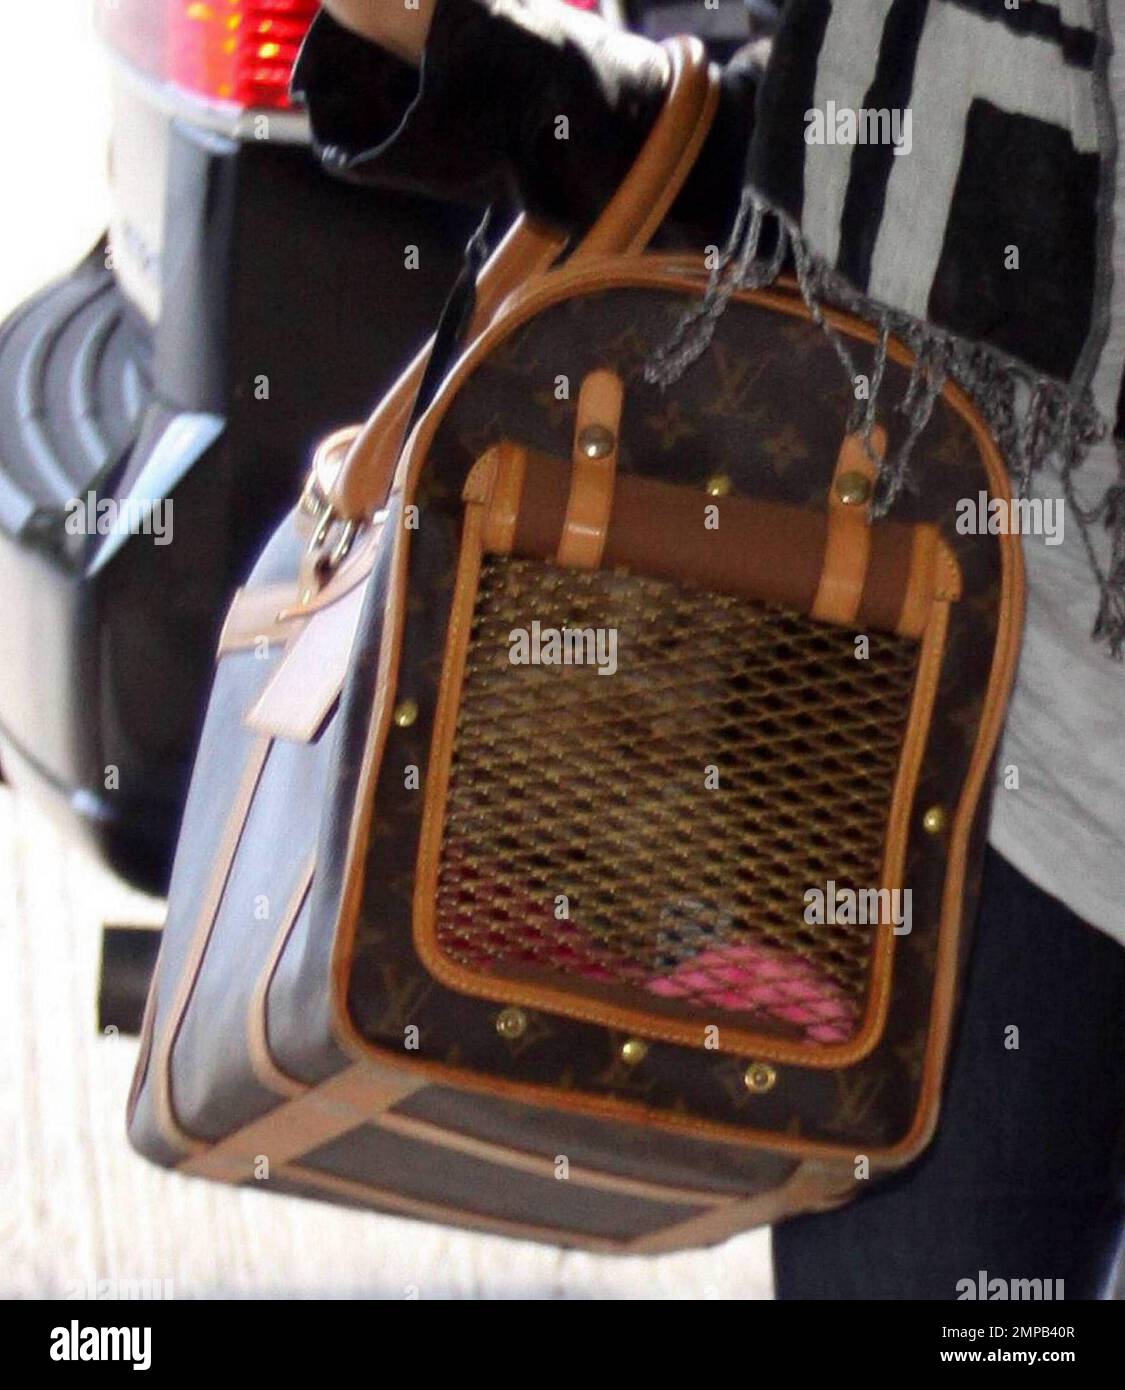 Ashley Tisdale wearing Louis Vuitton Monogram Denim Shawl, Louis